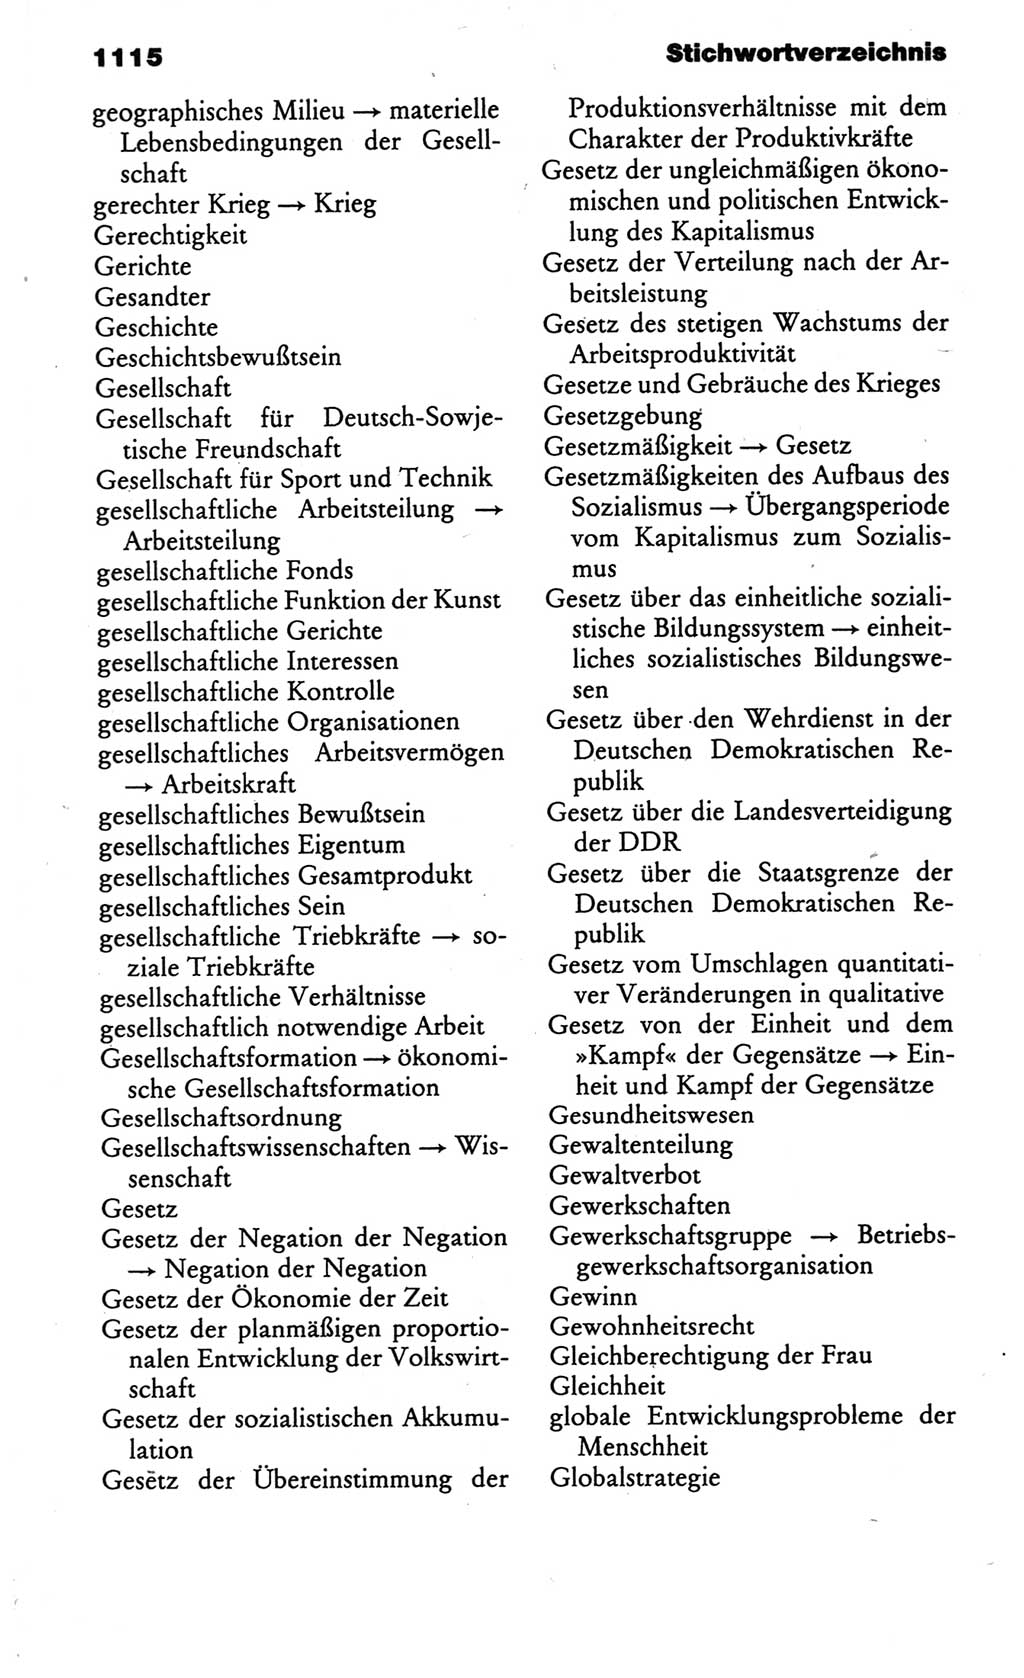 Kleines politisches Wörterbuch [Deutsche Demokratische Republik (DDR)] 1986, Seite 1115 (Kl. pol. Wb. DDR 1986, S. 1115)